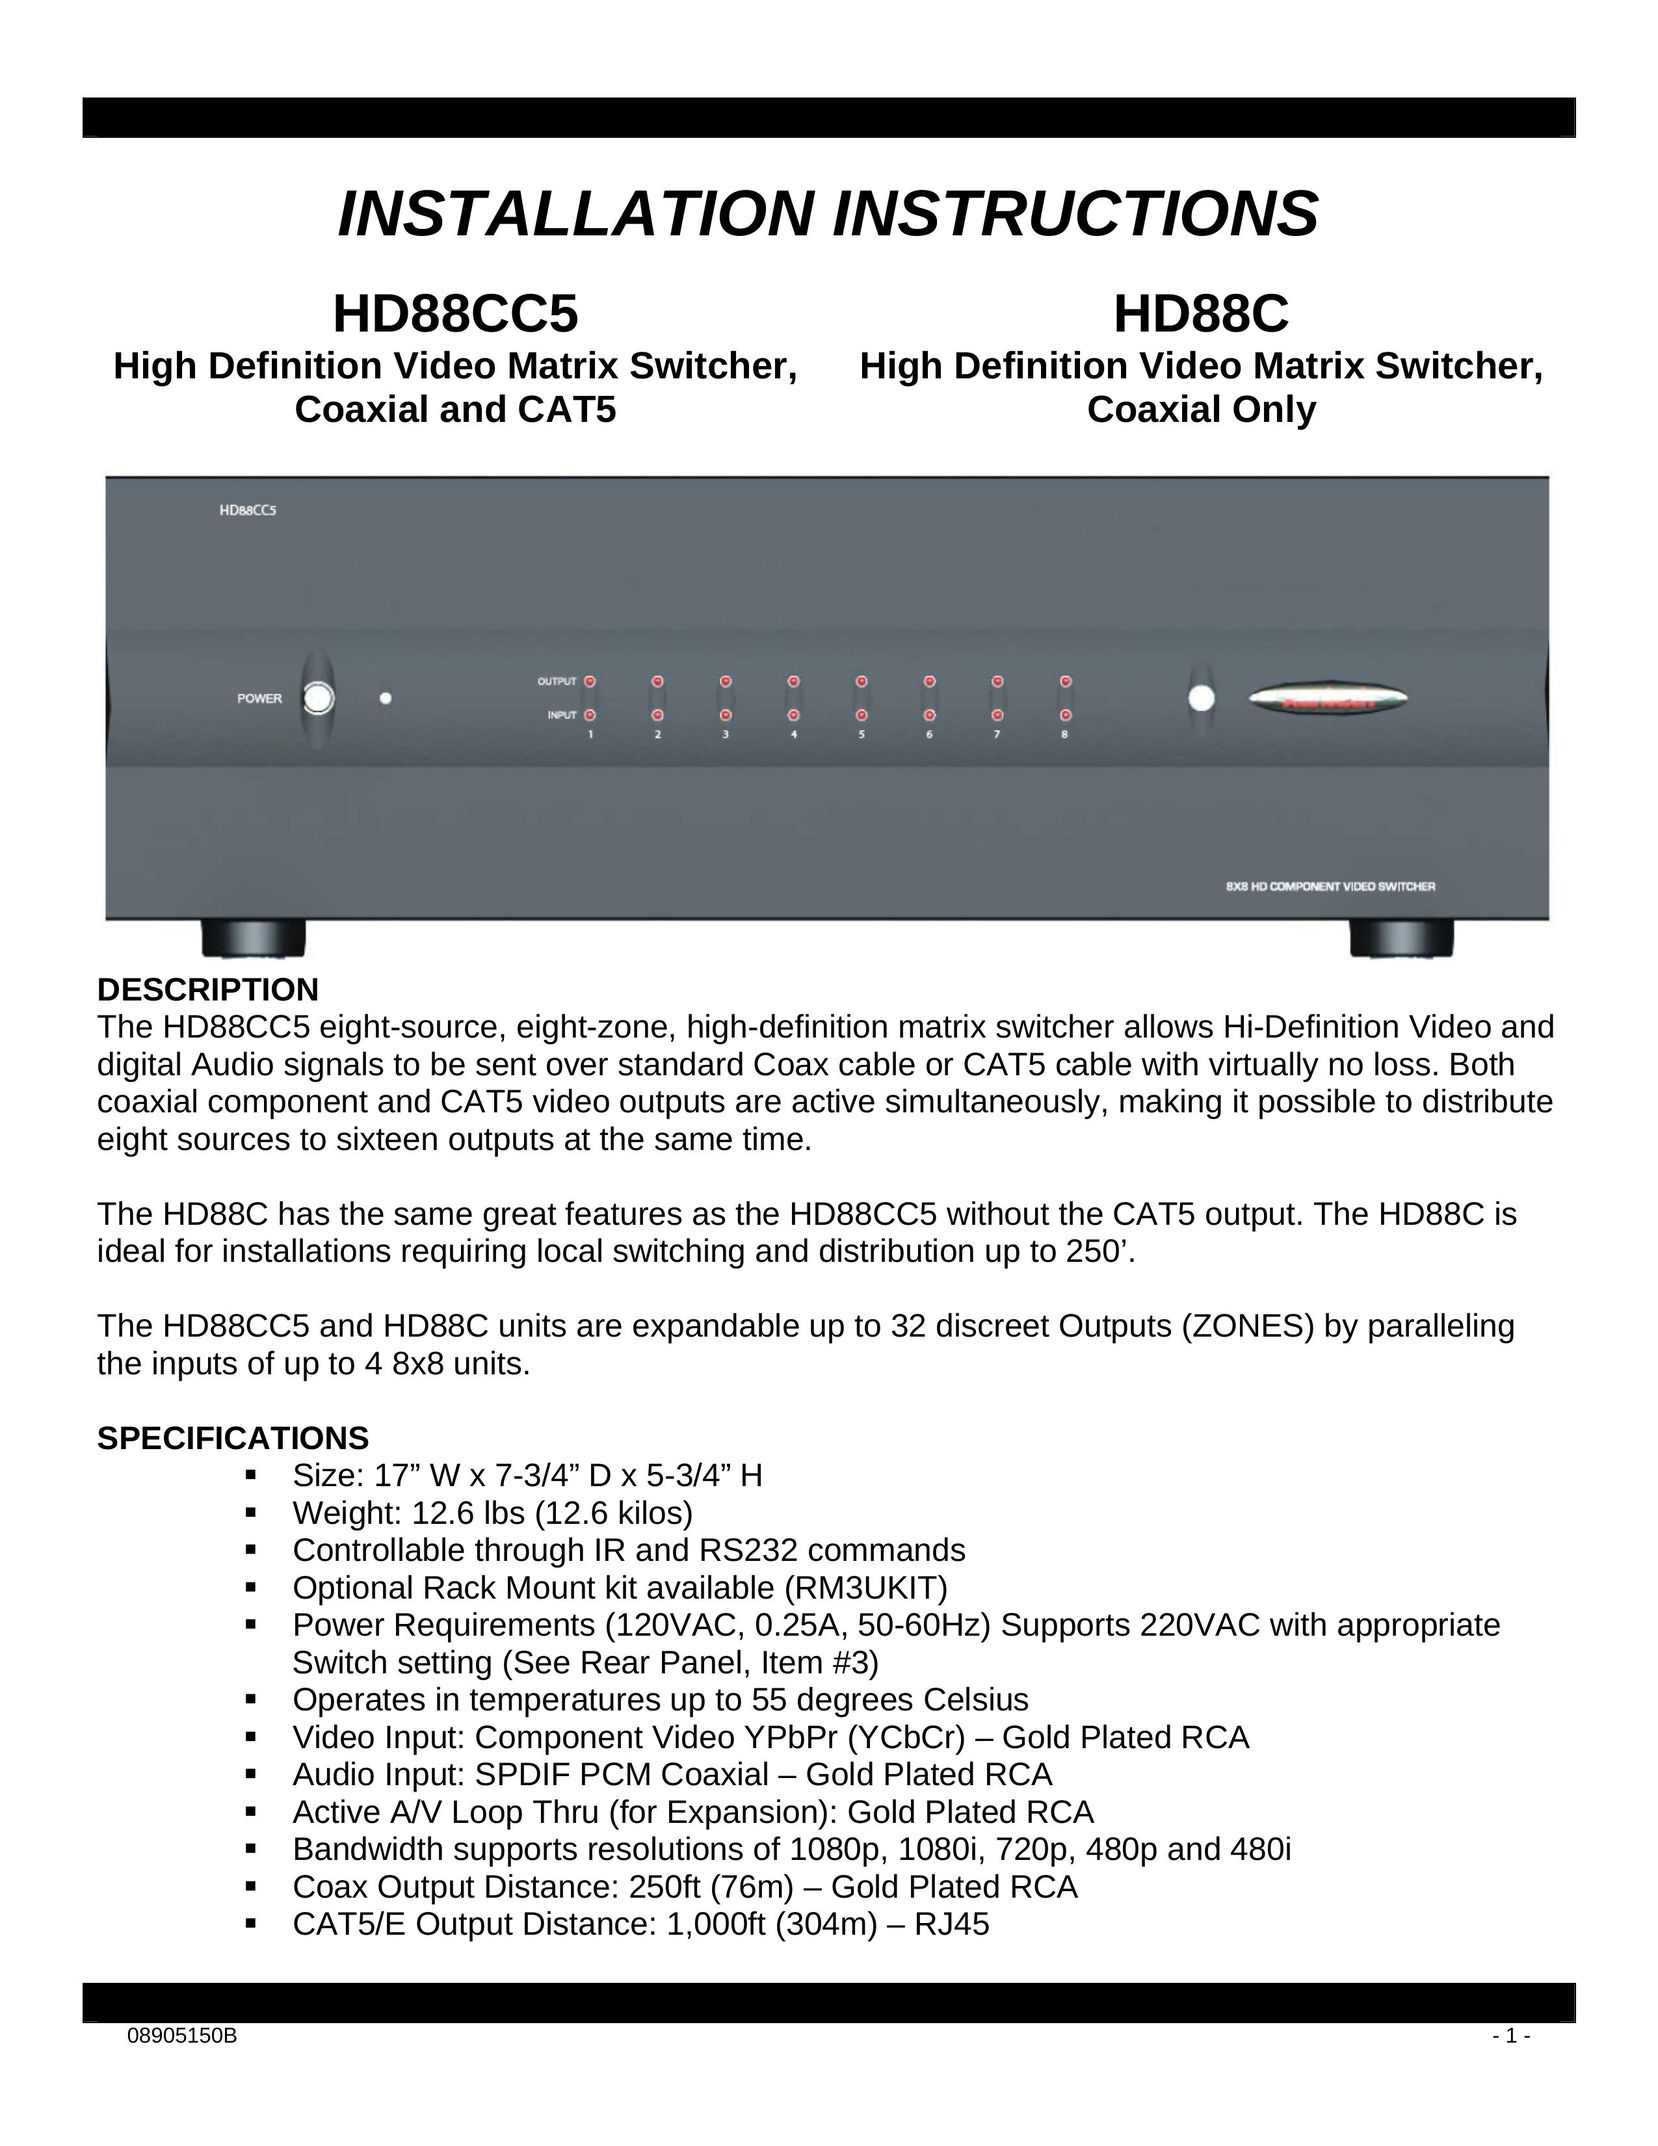 Xantech HD88C Switch User Manual